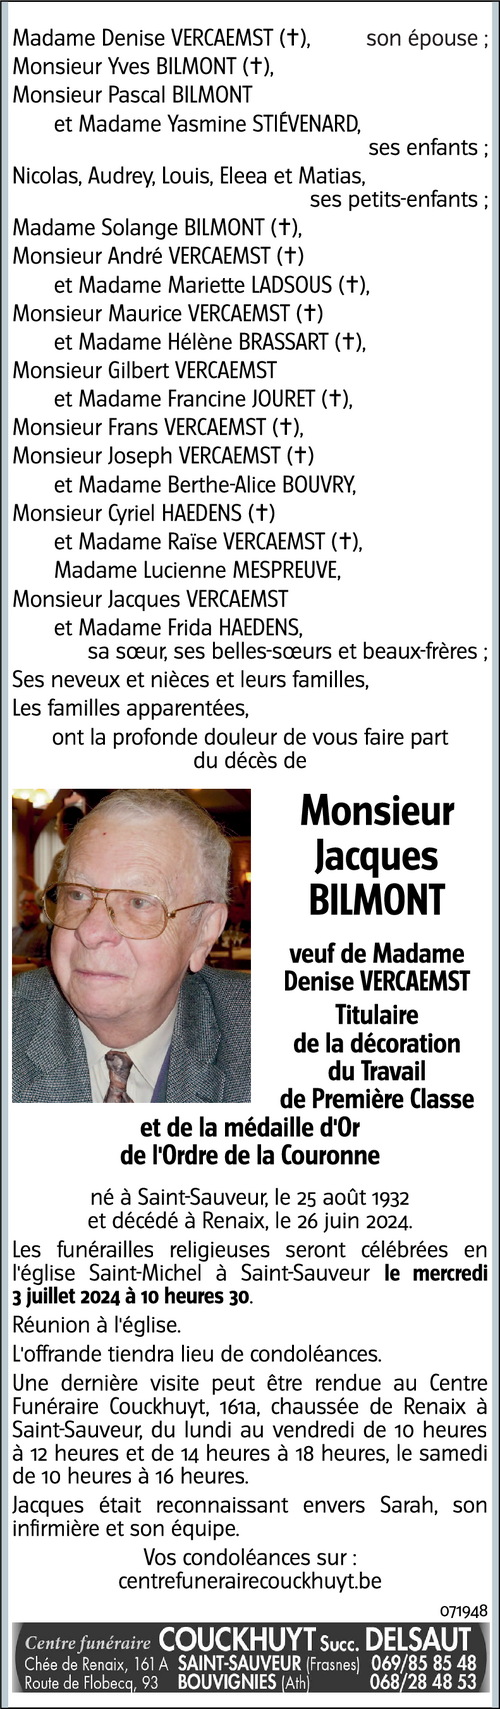 Jacques BILMONT